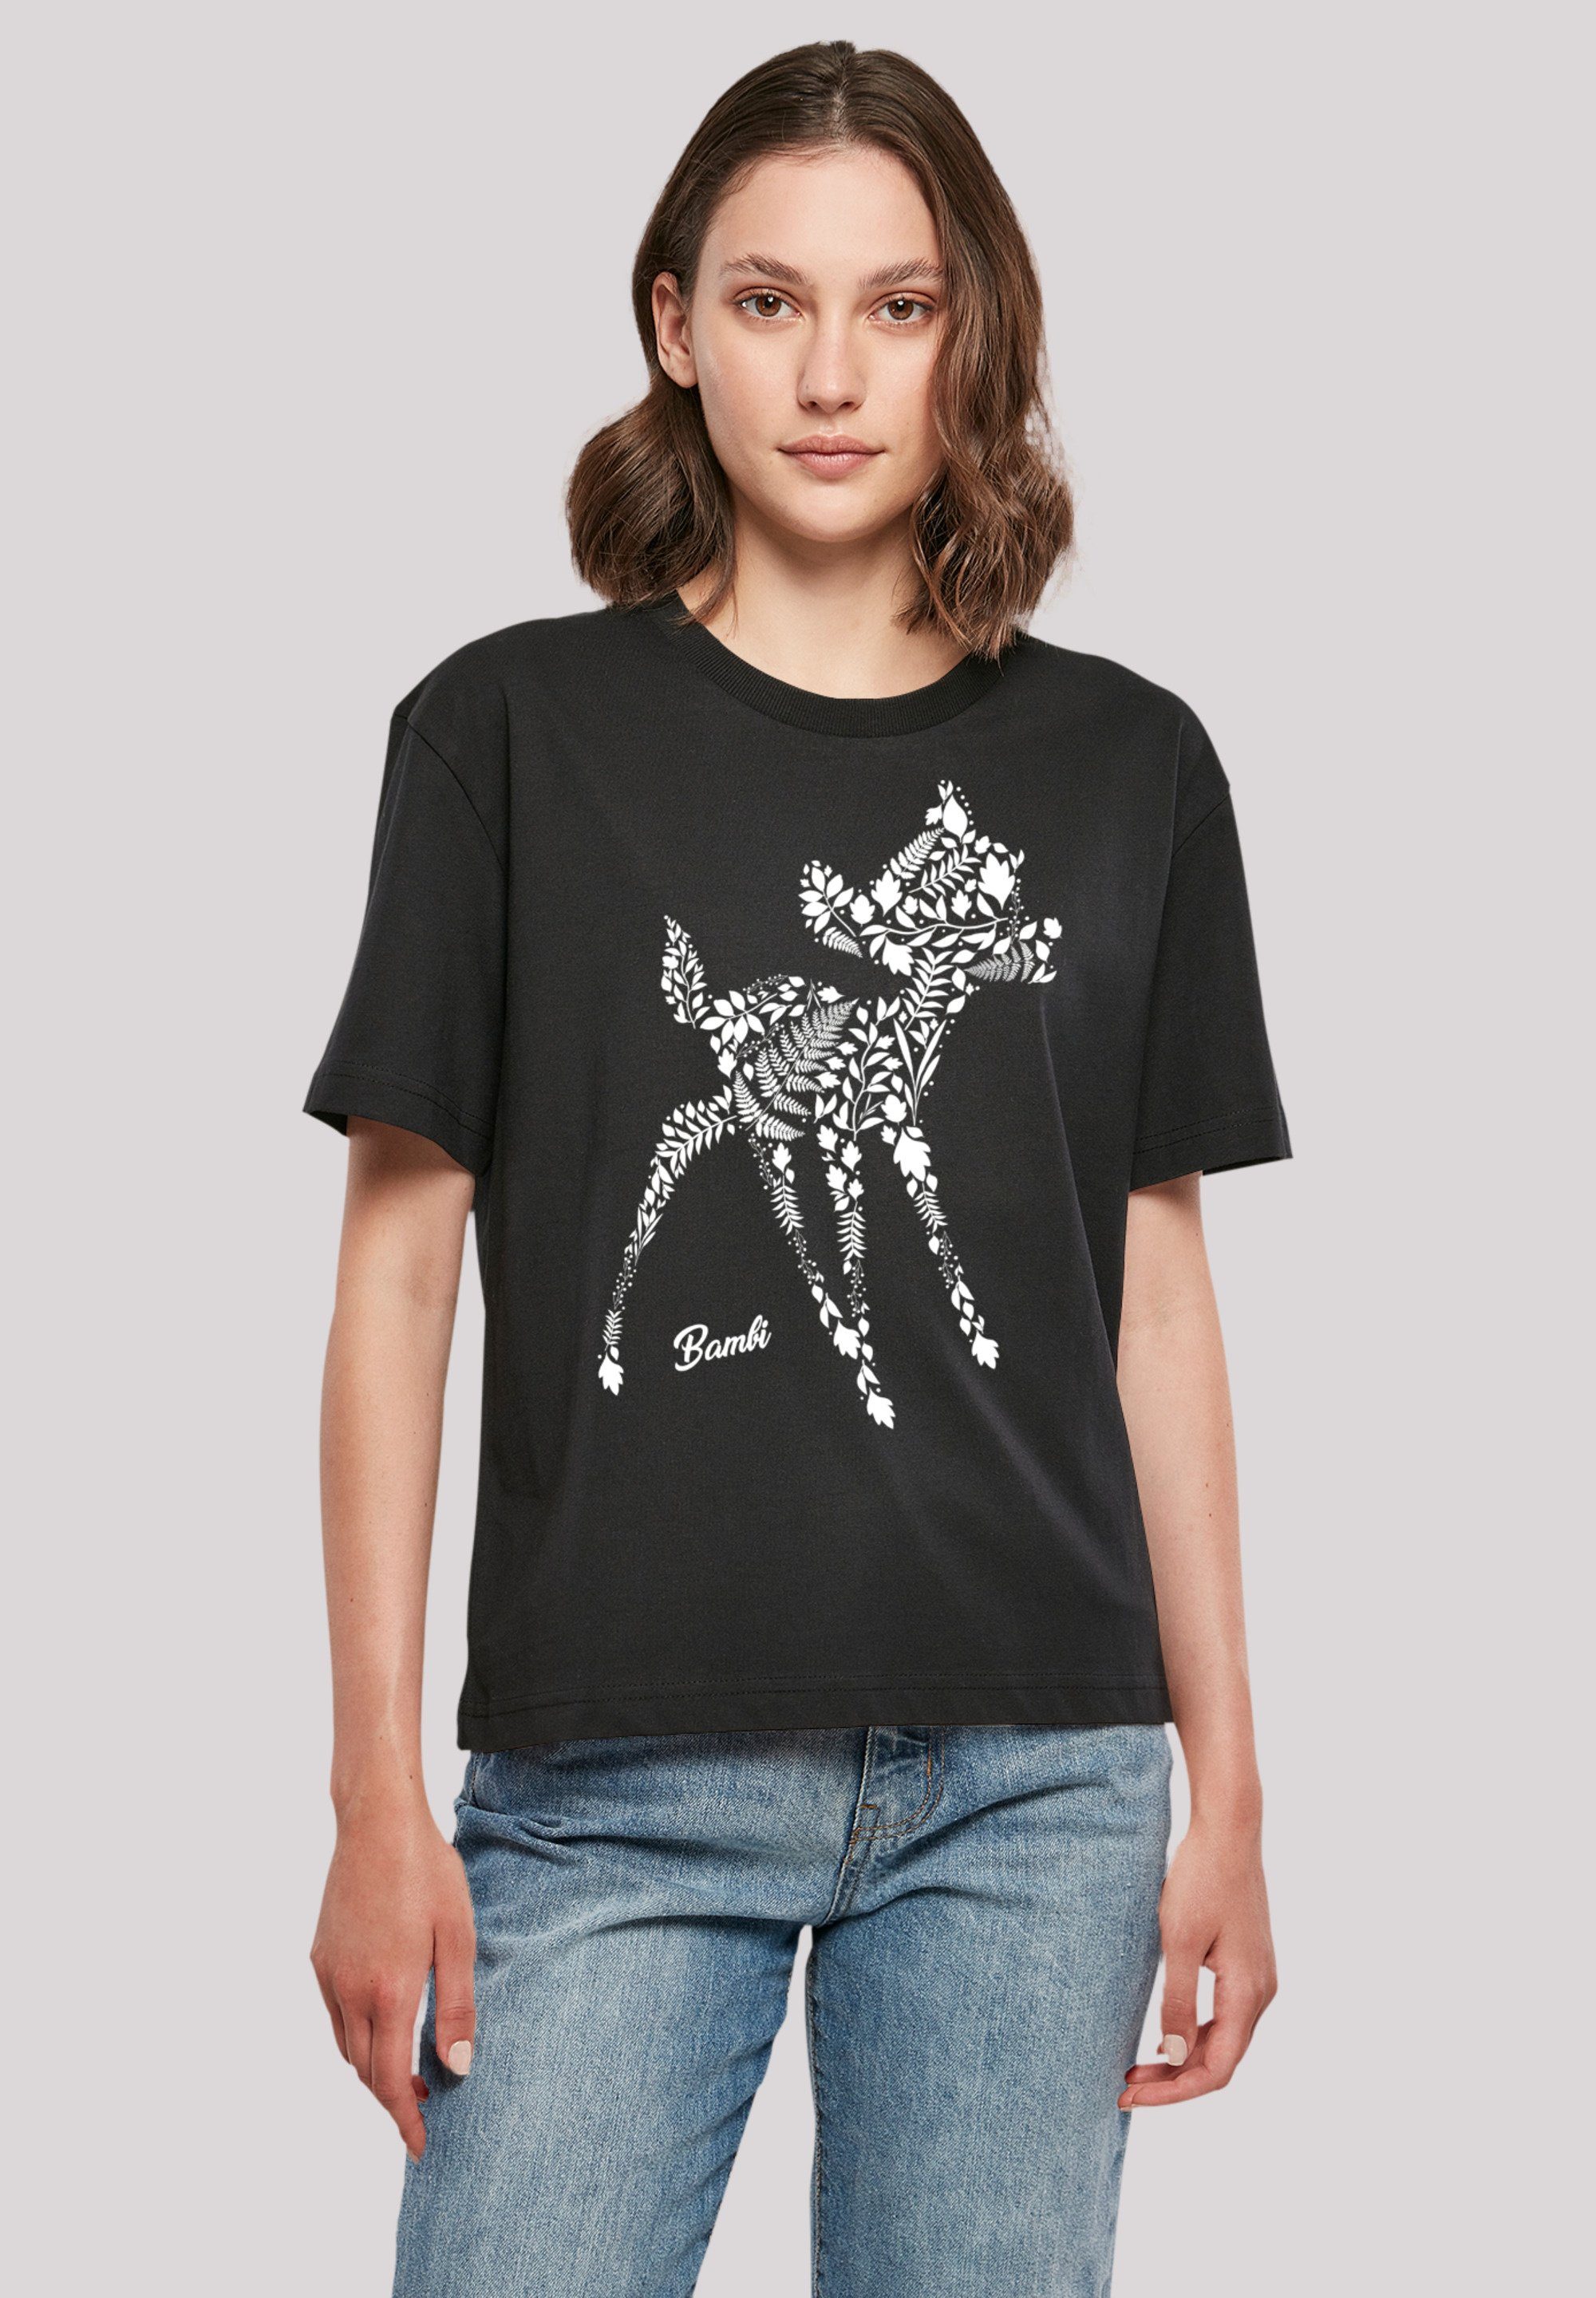 F4NT4STIC T-Shirt Disney Bambi Botanica Premium Qualität, Komfortabel und  vielseitig kombinierbar